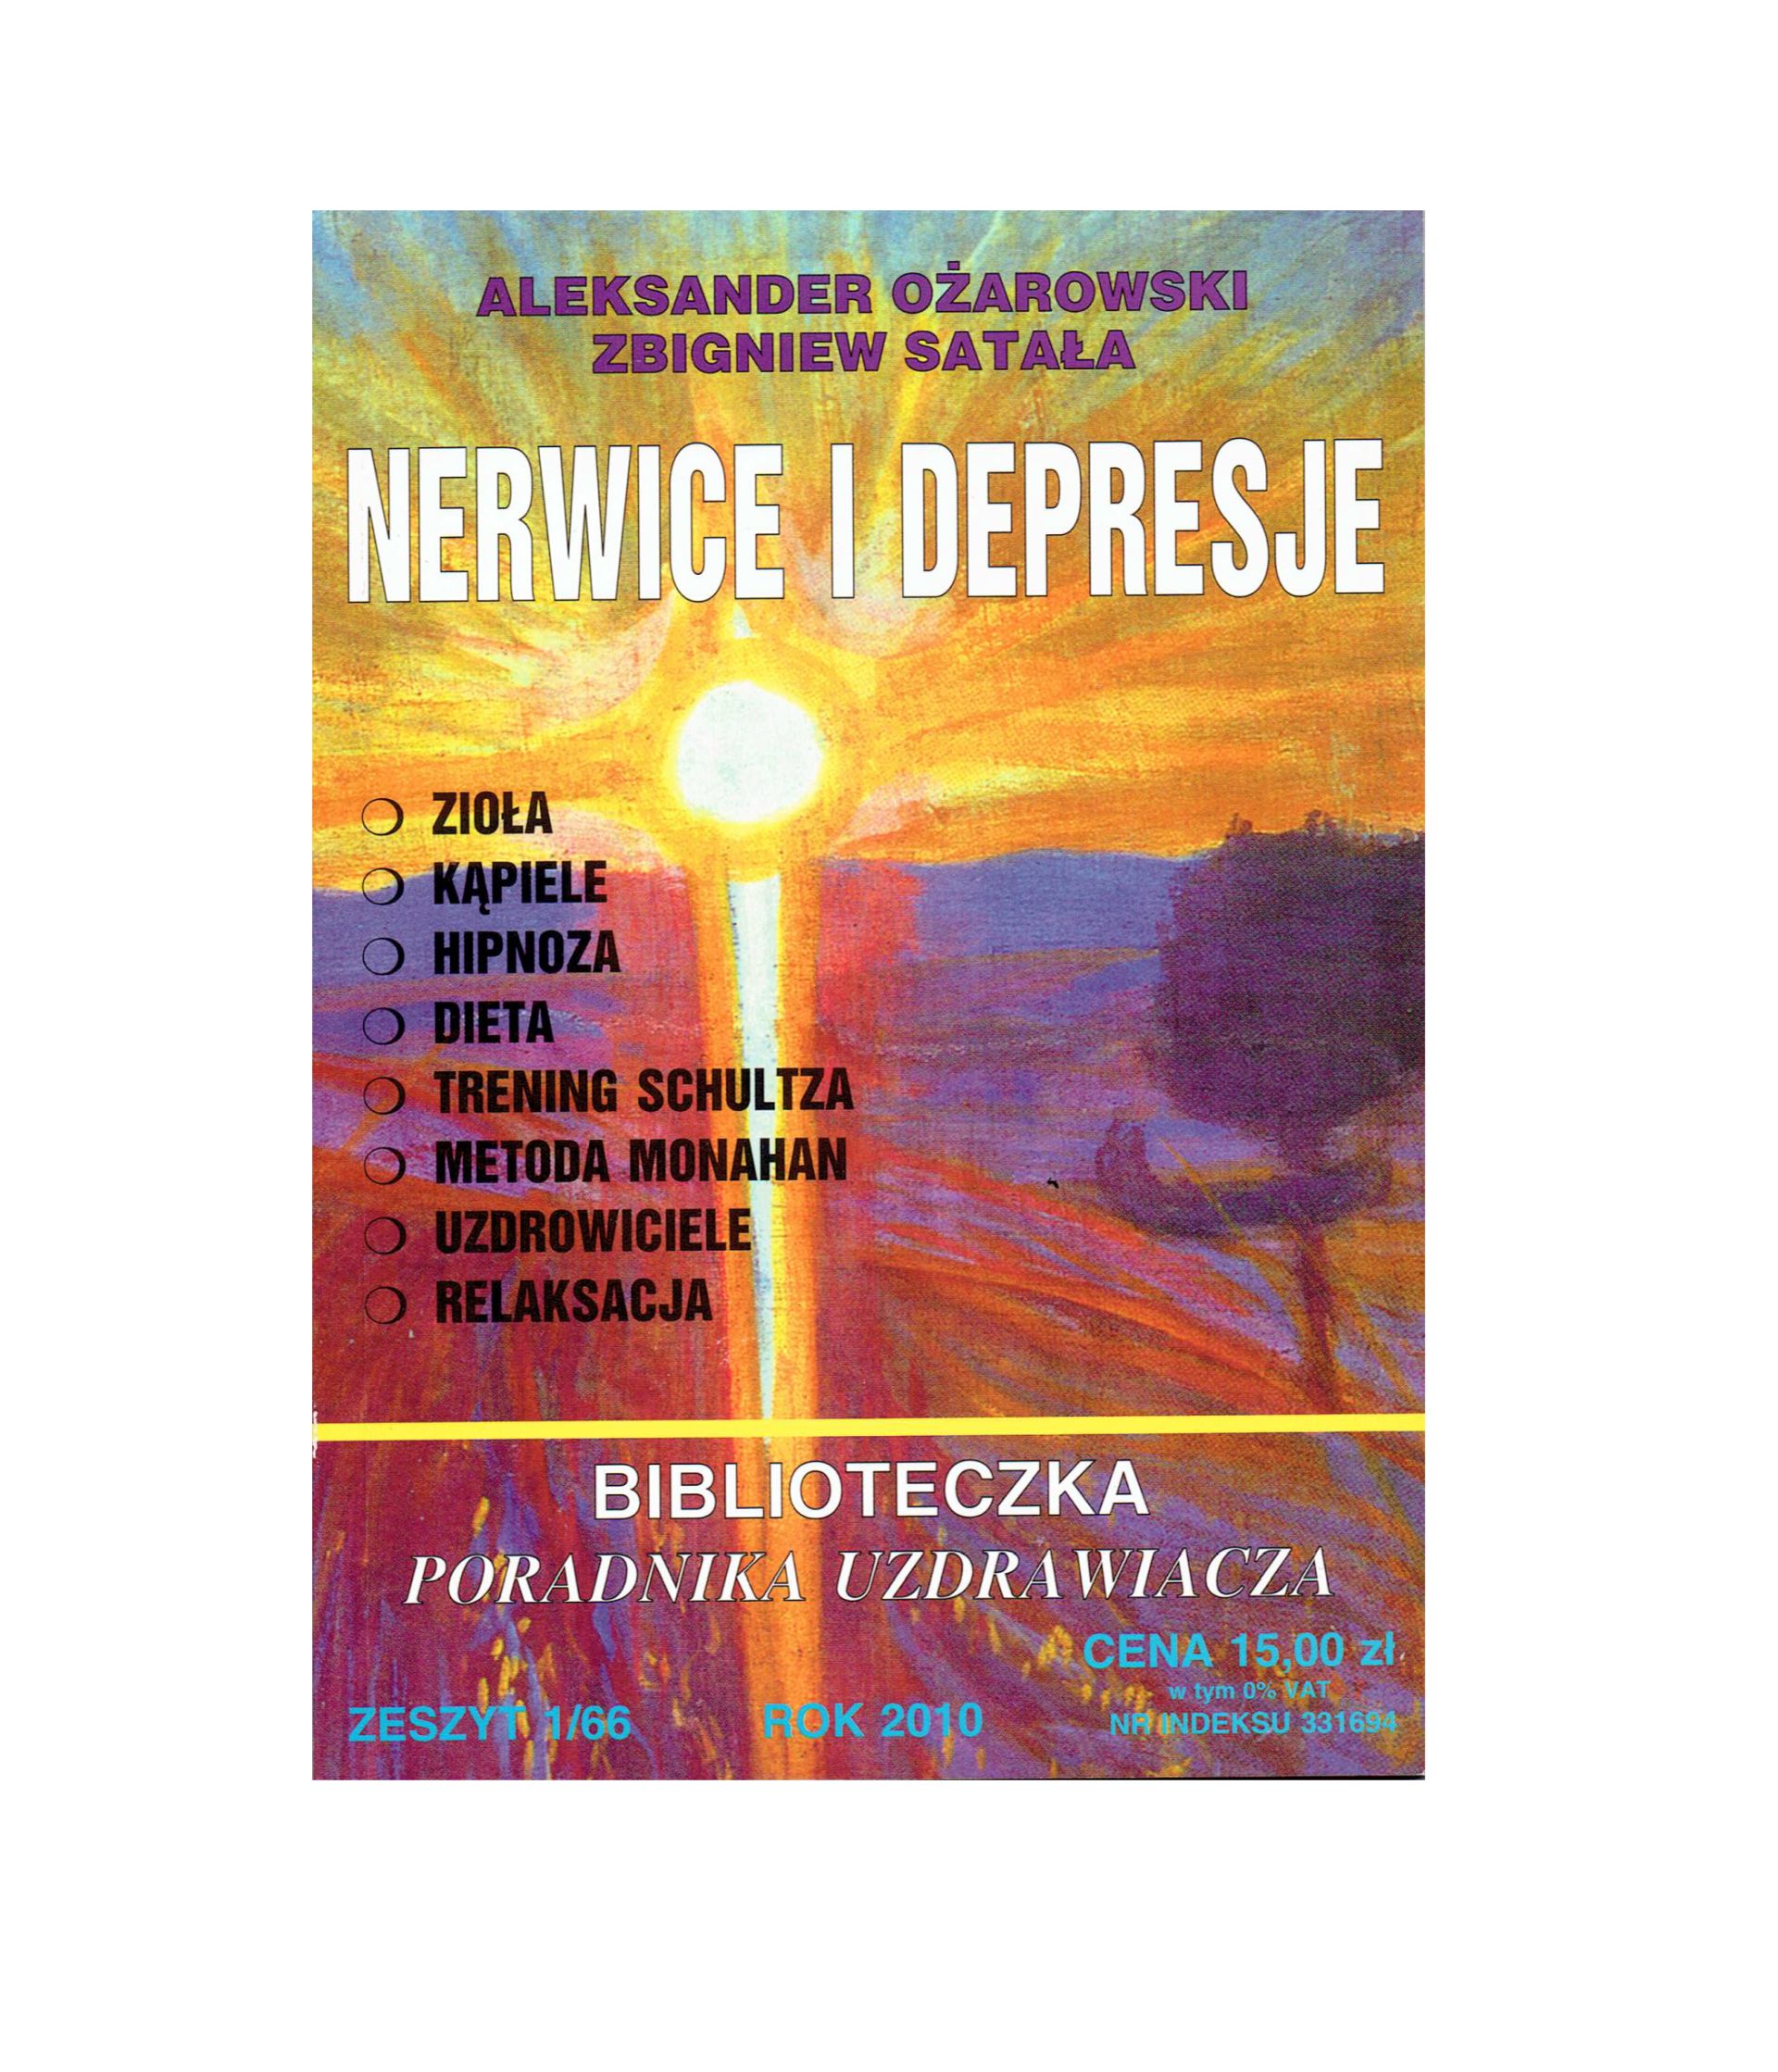 Nerwice i depresje Aleksander Ożarowski